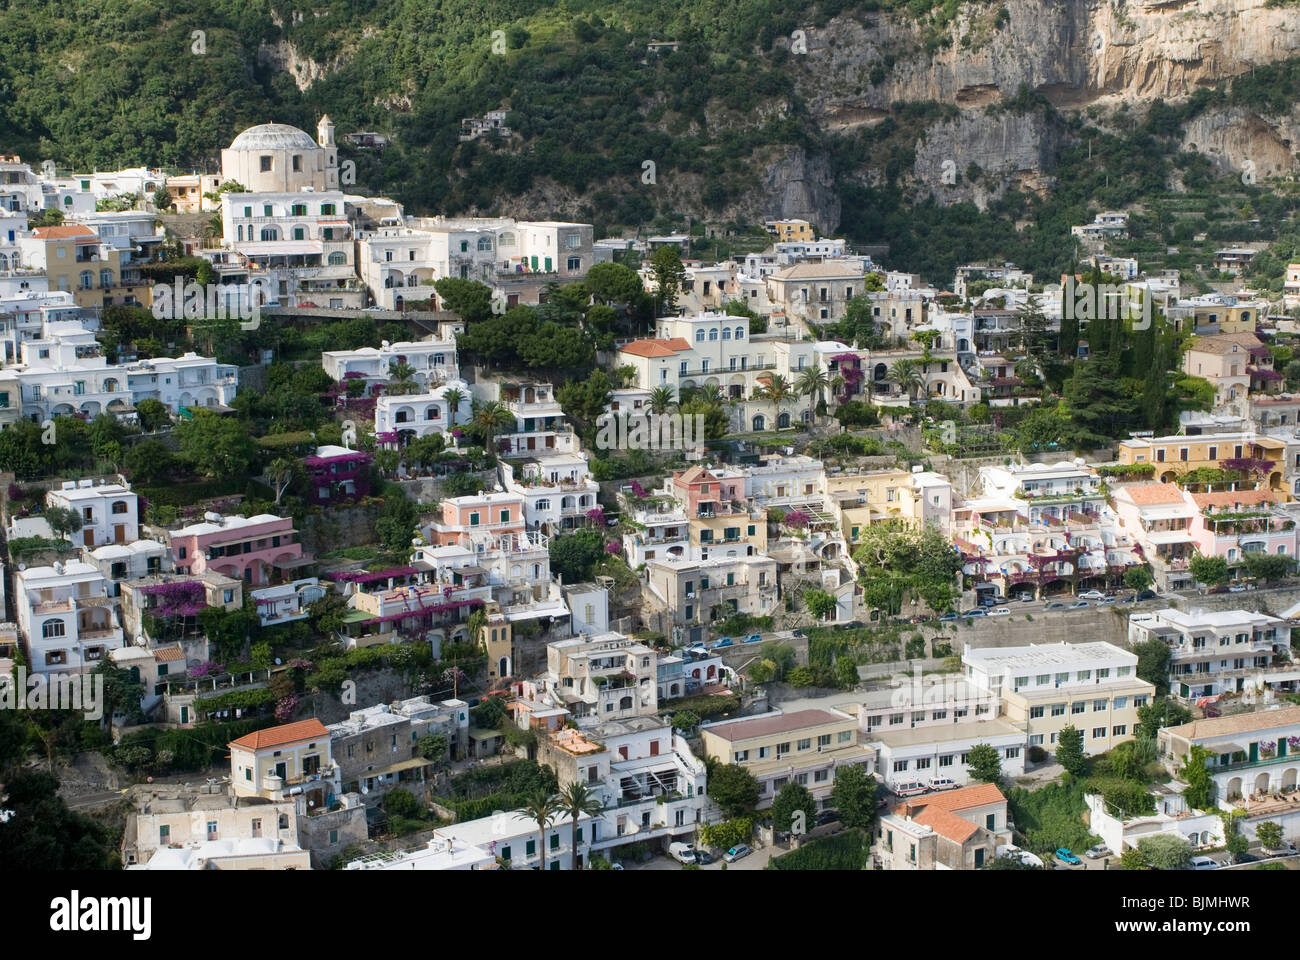 Italien, Kampanien, Amalfiküste, Positano | Italy, Campania, Amalfi Coast, Positano Stock Photo